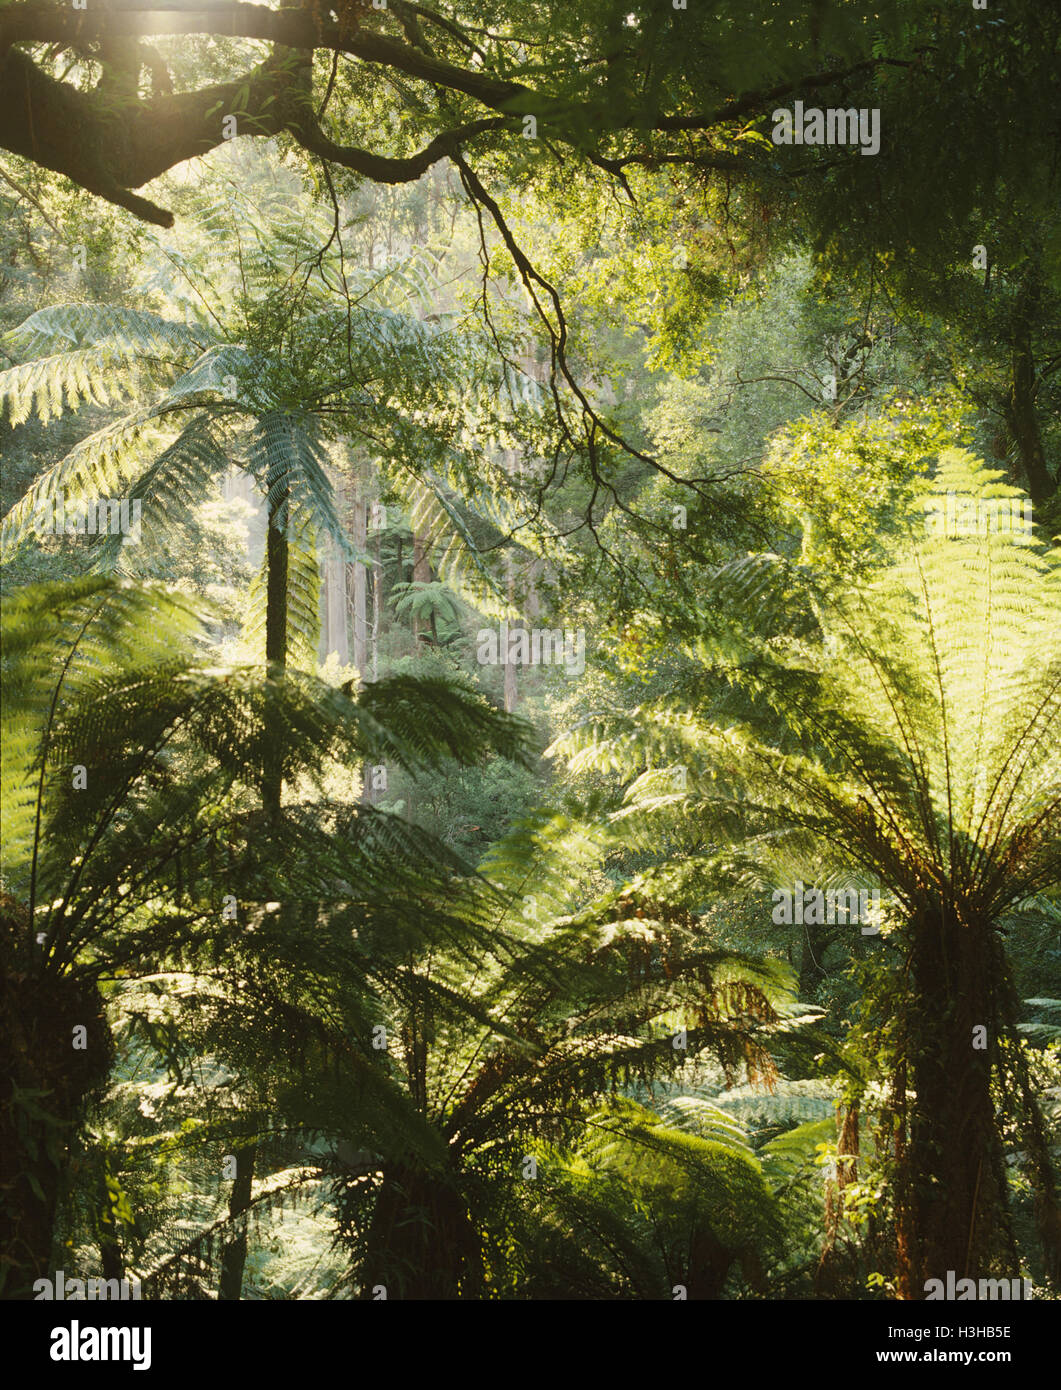 Helechos arborescentes en el bosque lluvioso templado incluyendo rough helechos arborescentes (Cyathea australis). Foto de stock